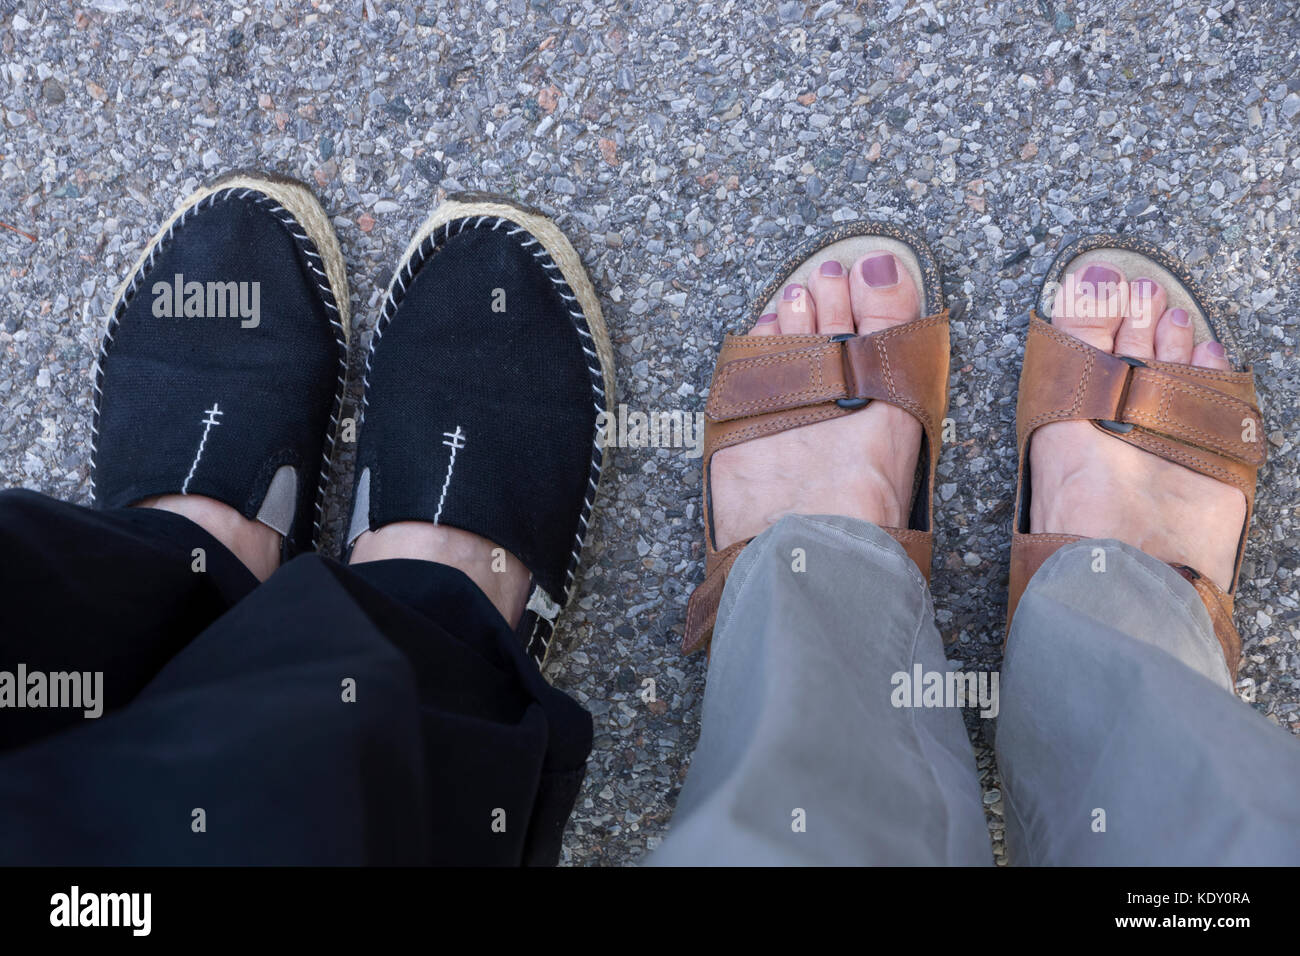 El calzado de verano casual opciones: mujer-toe zapatos cerrados (alpargatas) y open-toe sandalias. Foto de stock